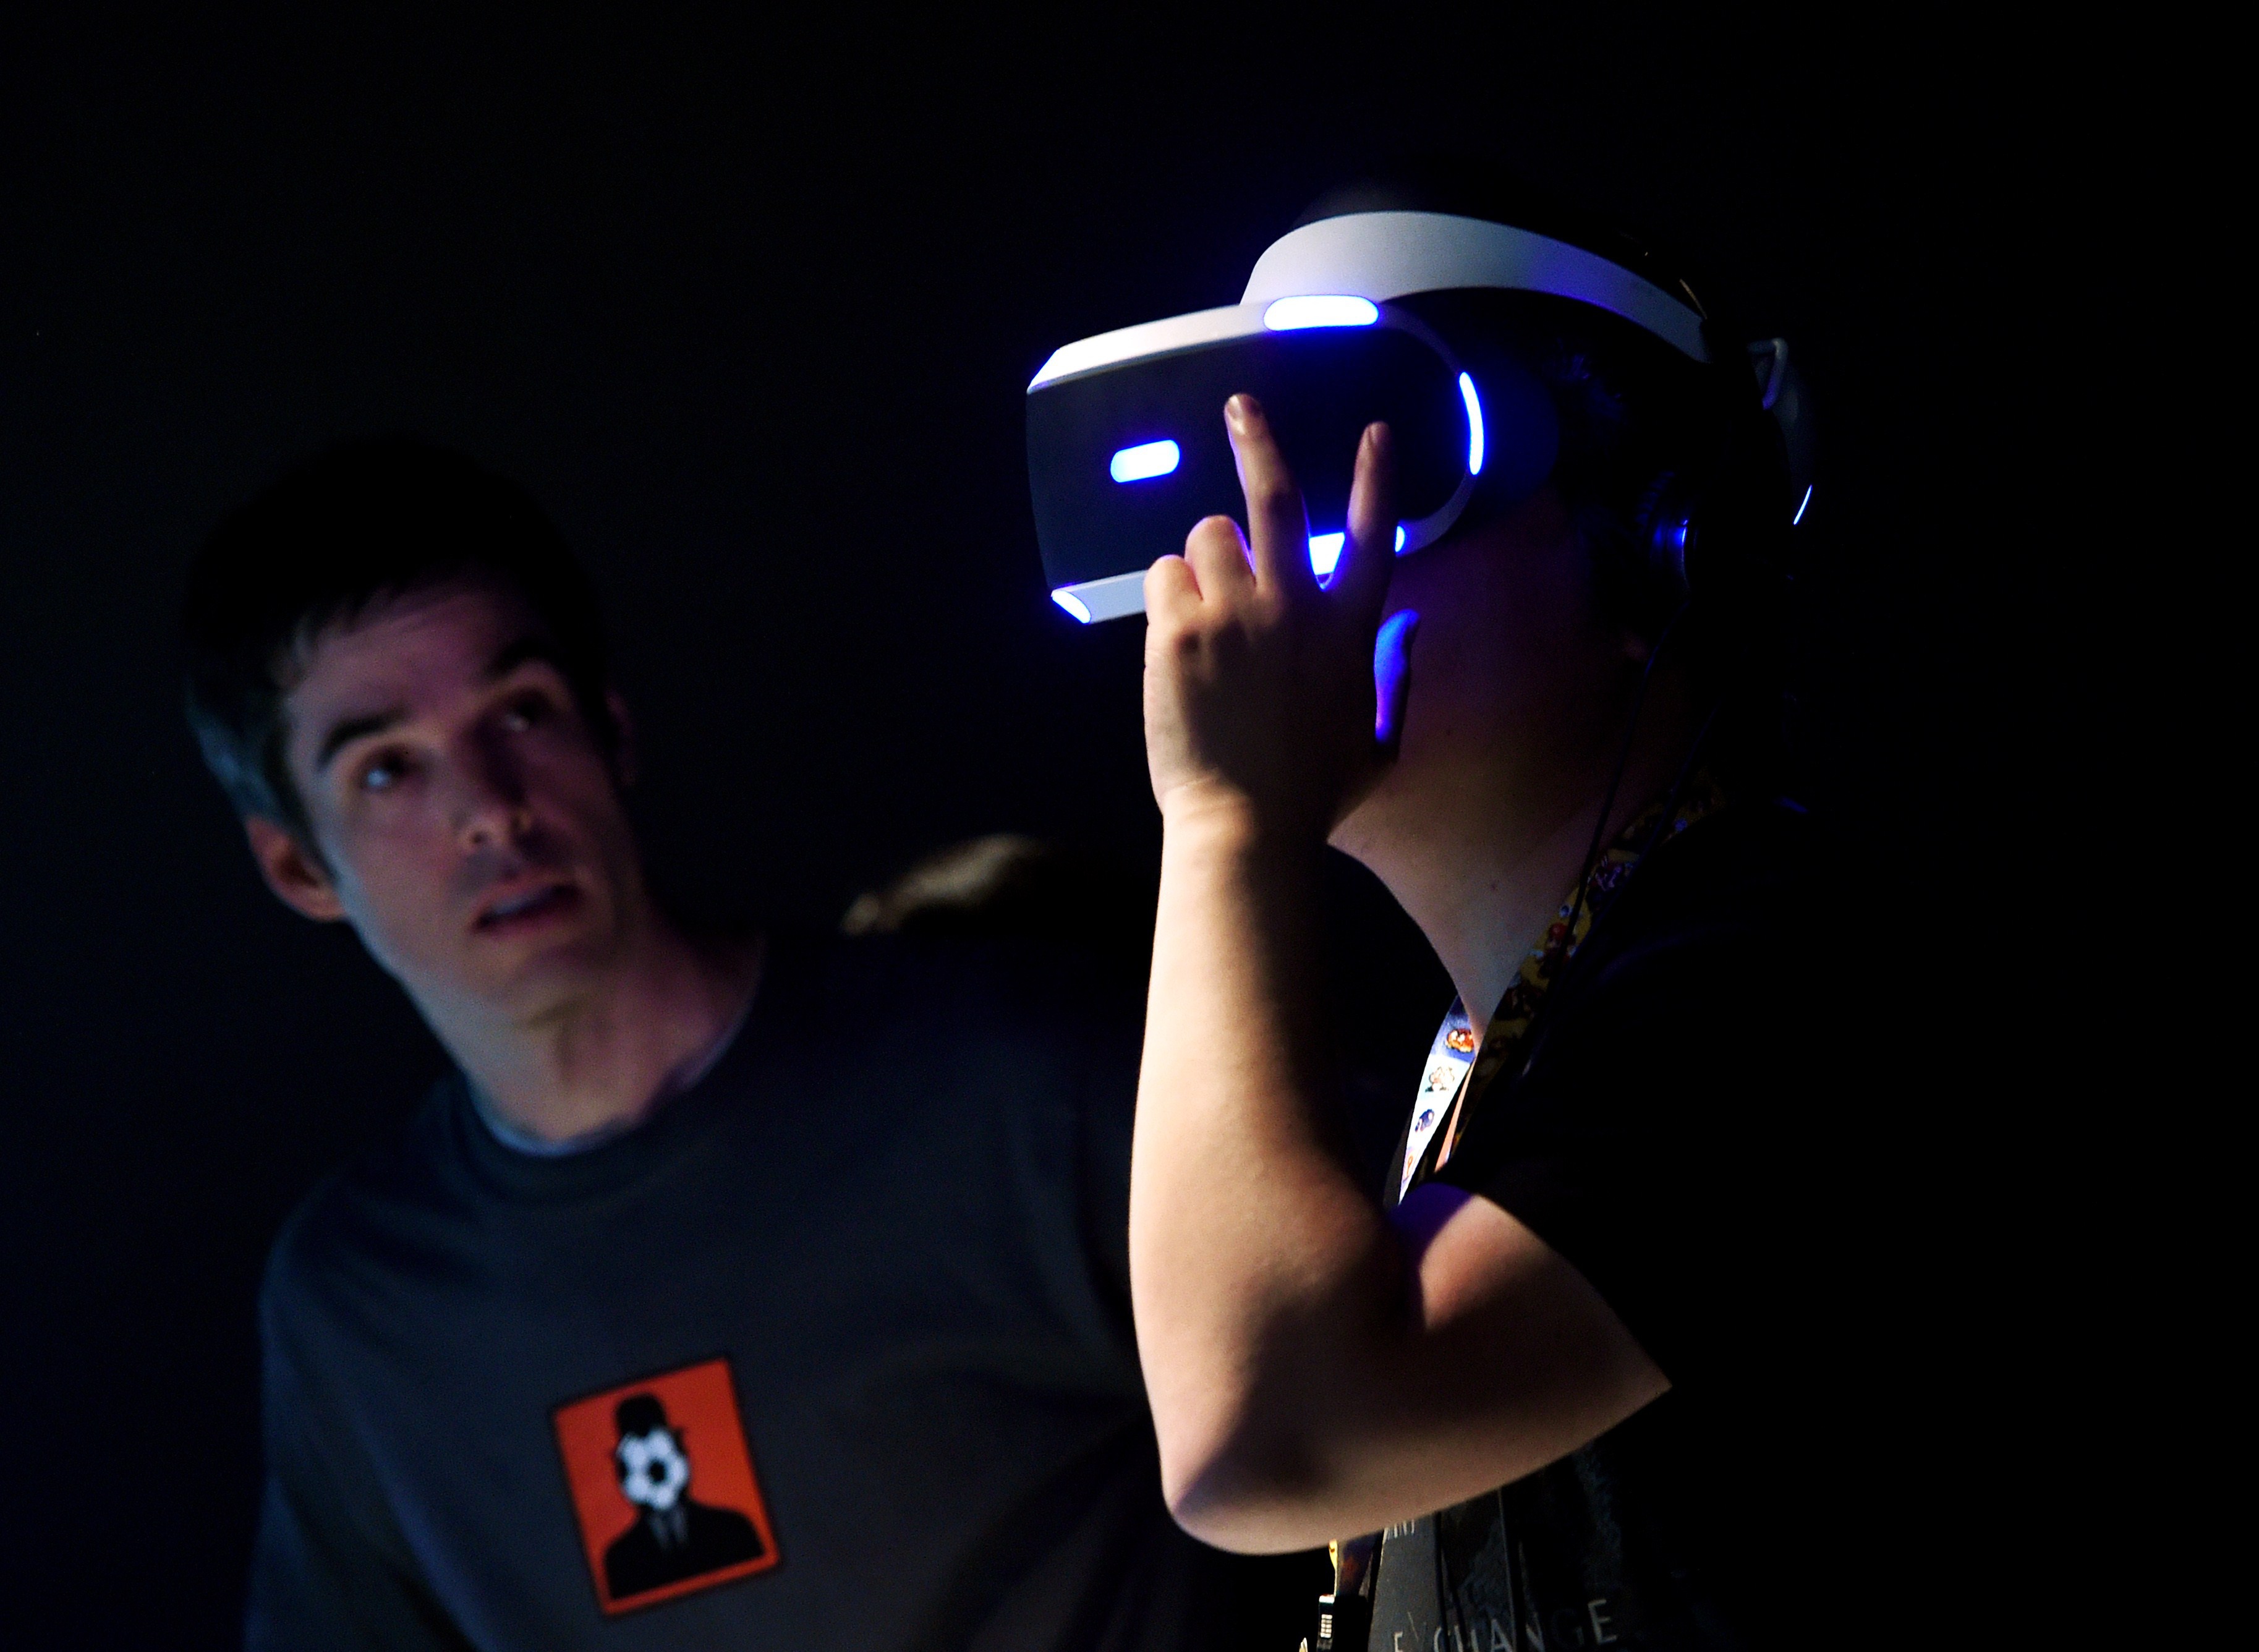 Jugadores testeando el dispositivo del Proyecto Morpheus de Soni, en Los Angeles, California, el 17 de junio de 2015